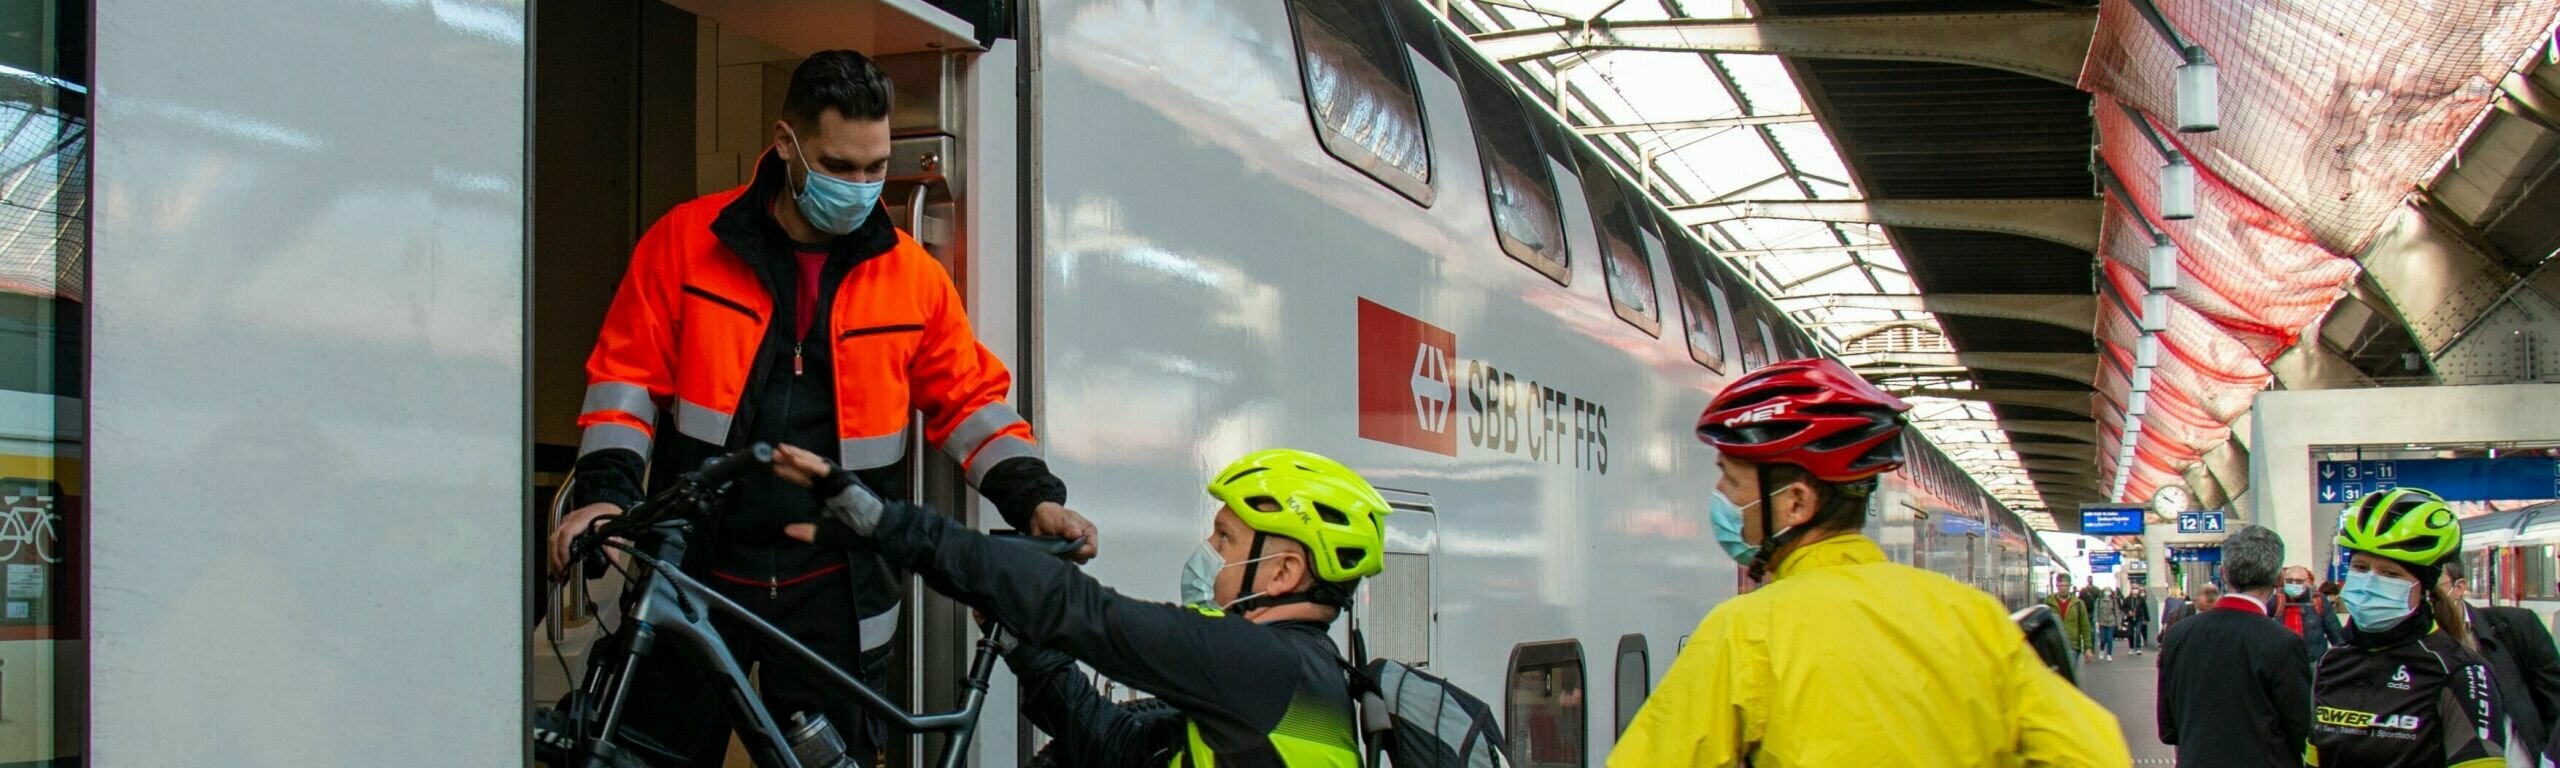 Ci saranno ancora più posti bici sui treni a lunga percorrenza.